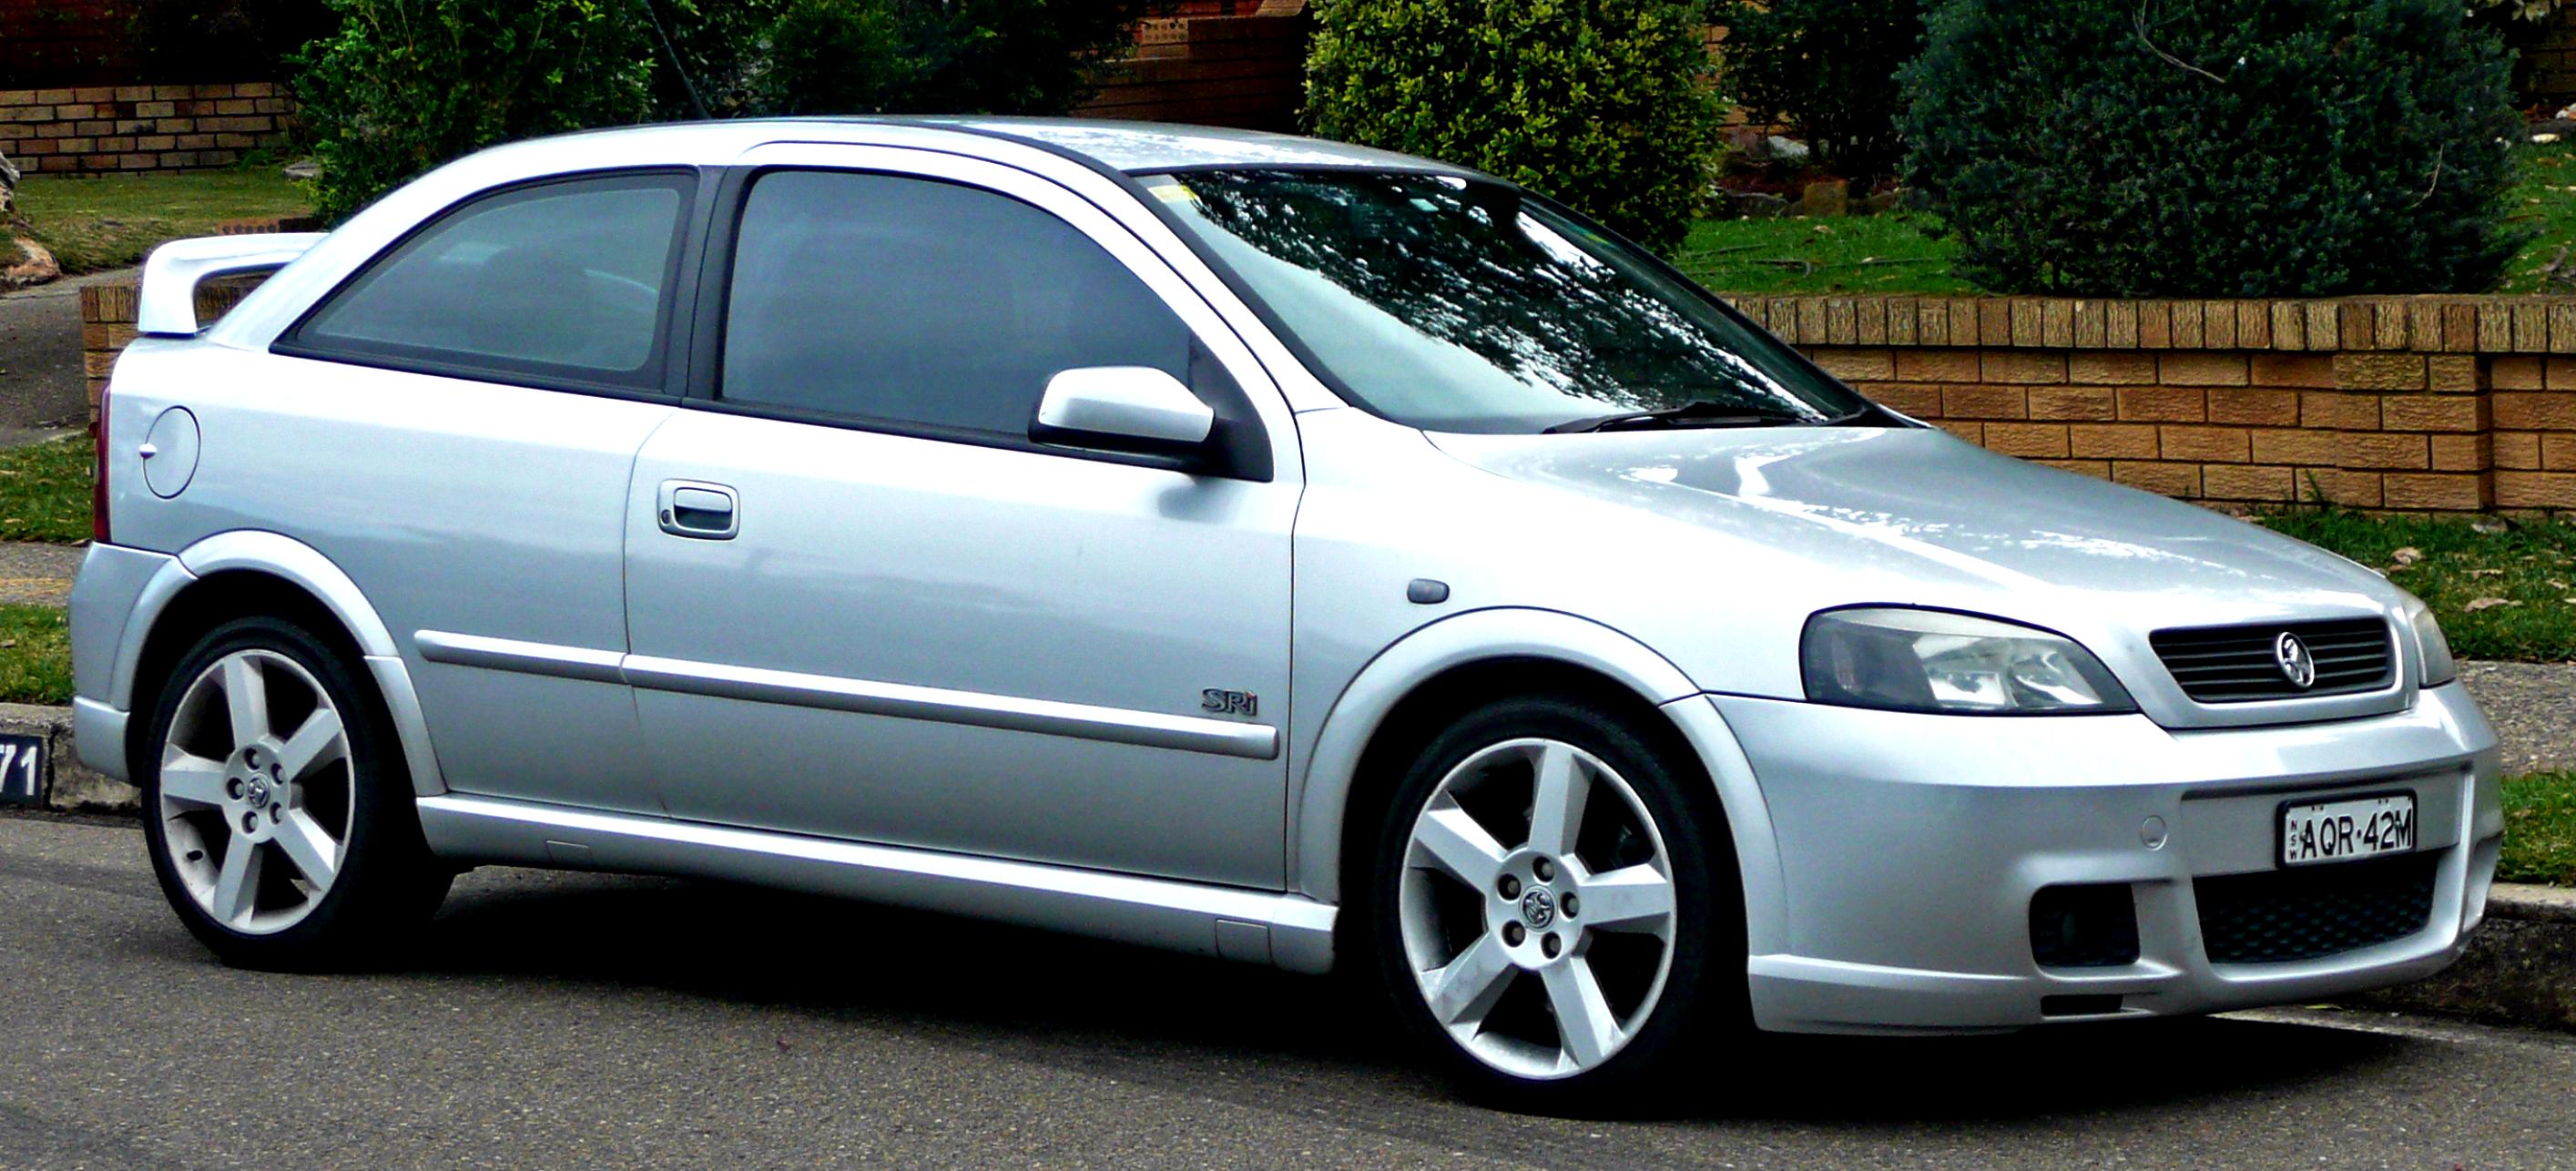 Holden Astra 3 Doors 2003 #7